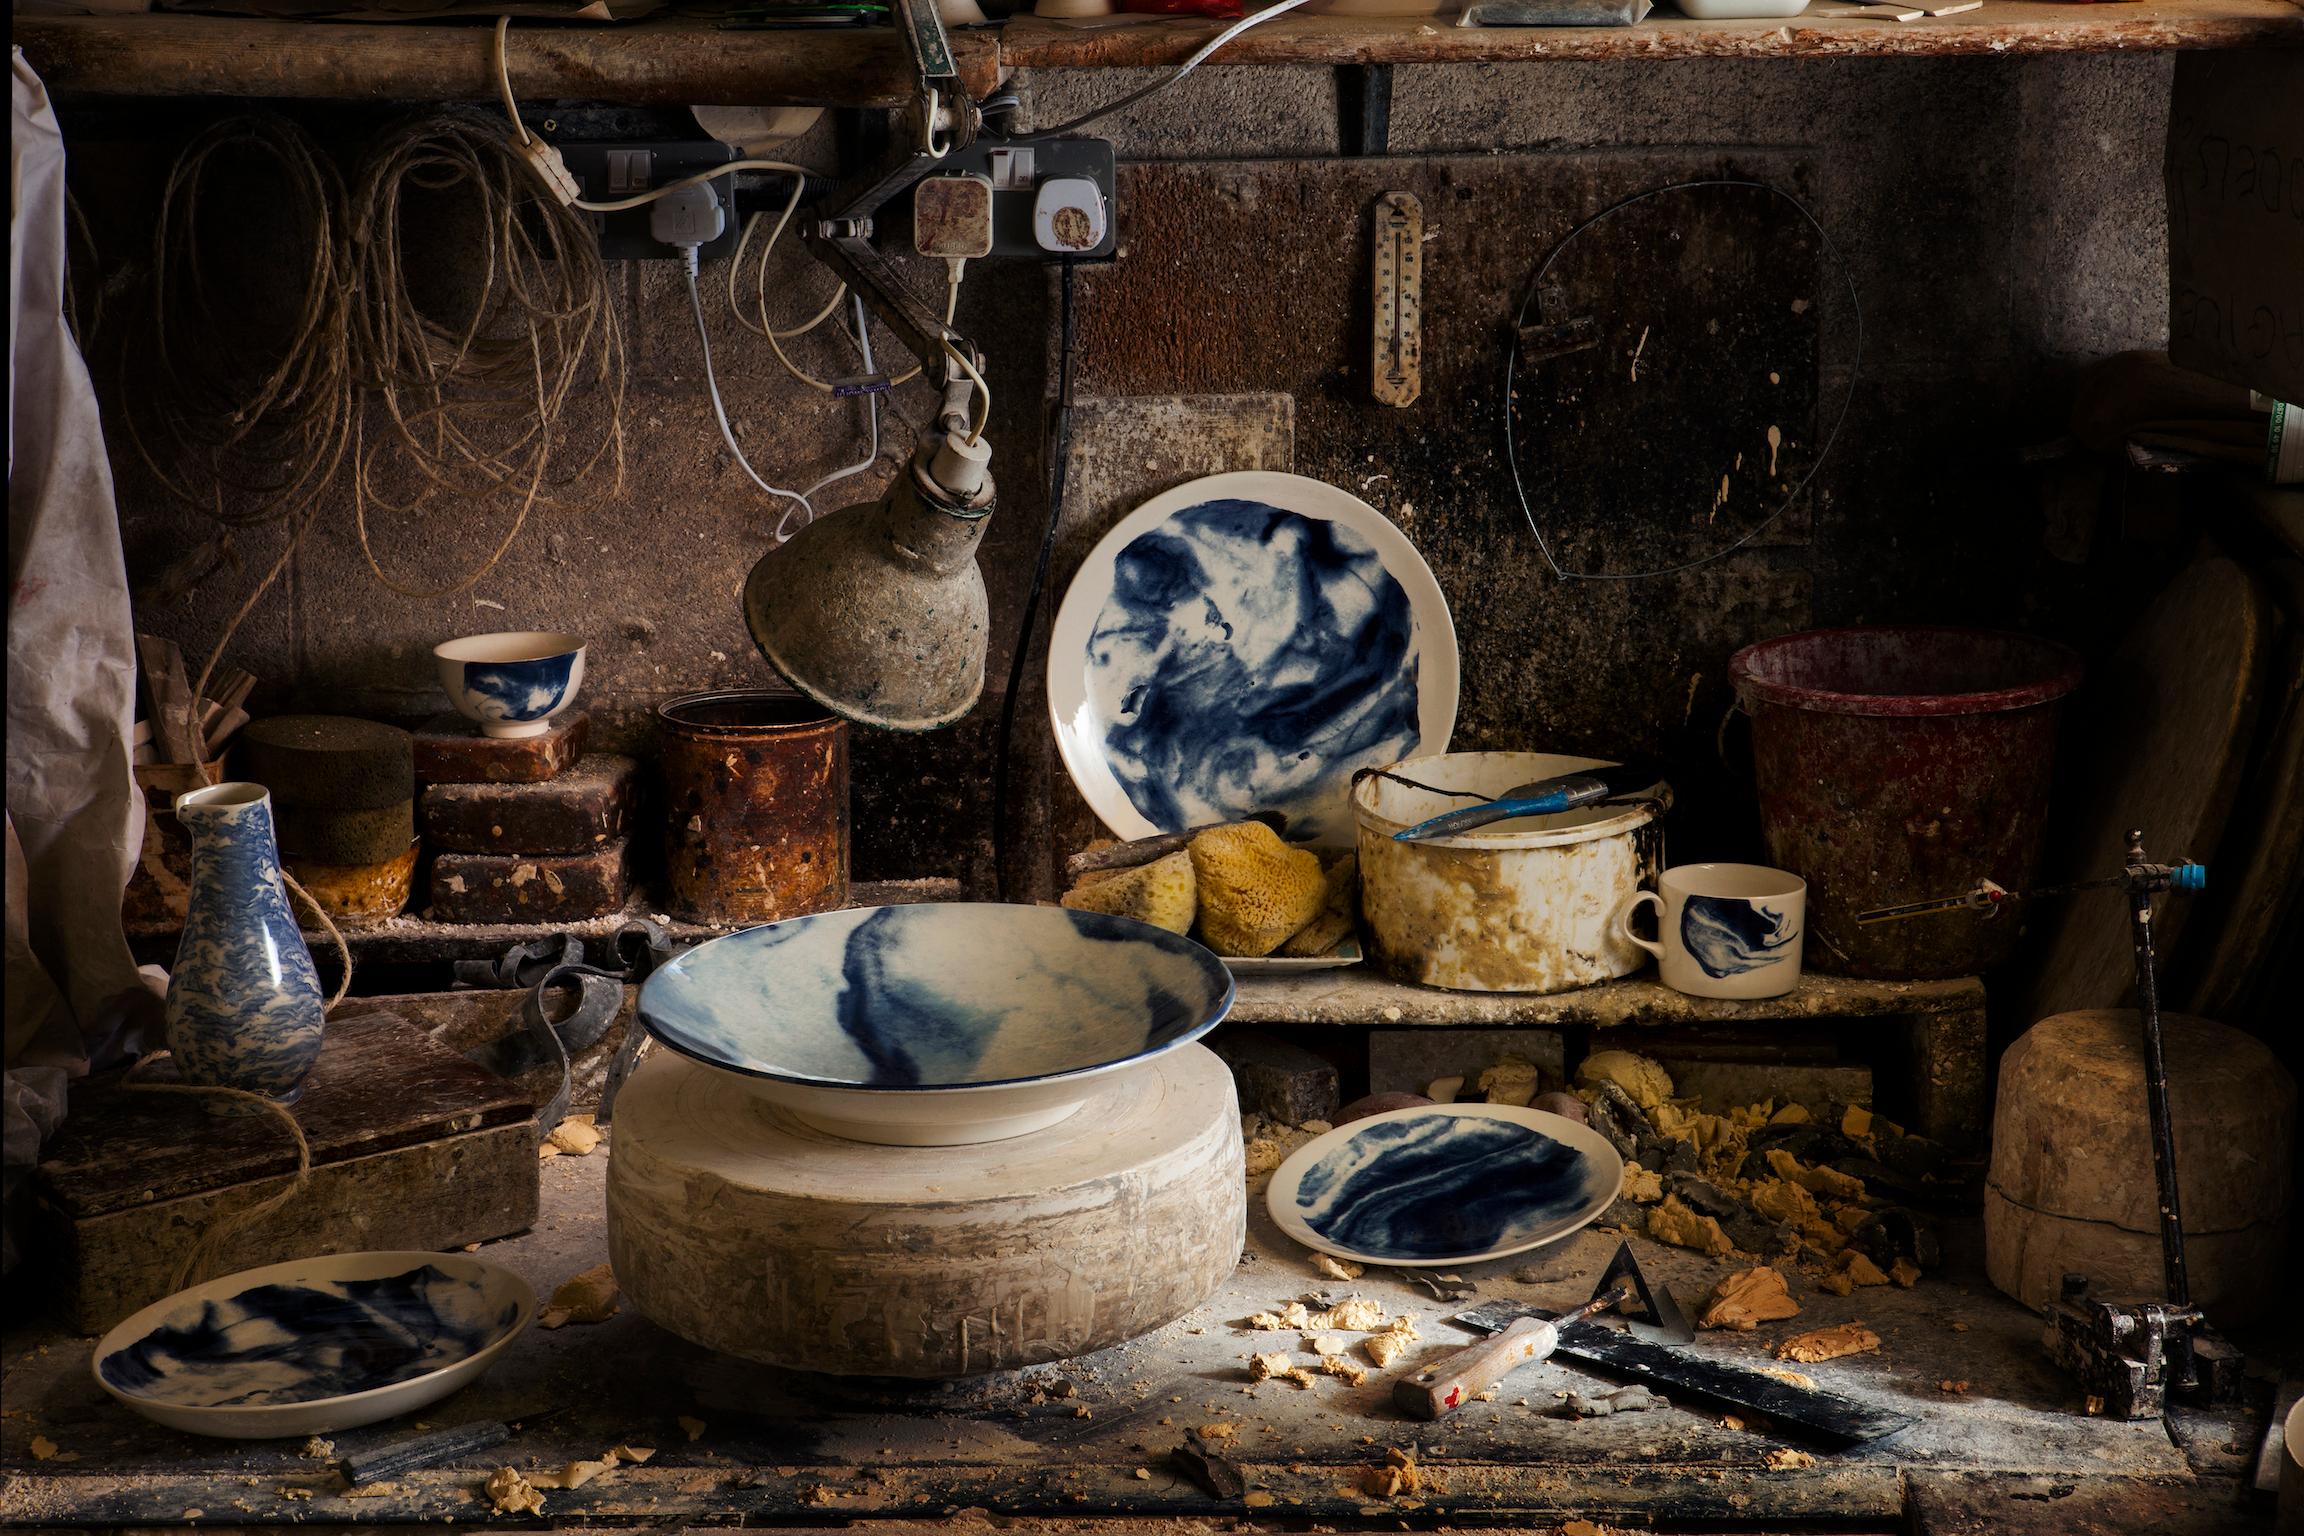 Indigo Storm, 1882 Ltd. mit Faye Toogood. Faye Toogoods Serie von Keramikdesigns für 1882 Ltd. feiert die zufällige Schönheit natürlicher Unvollkommenheiten. Indigo Storm ist eine kühne Interpretation der traditionellen Formen von Sahnegeschirr, die